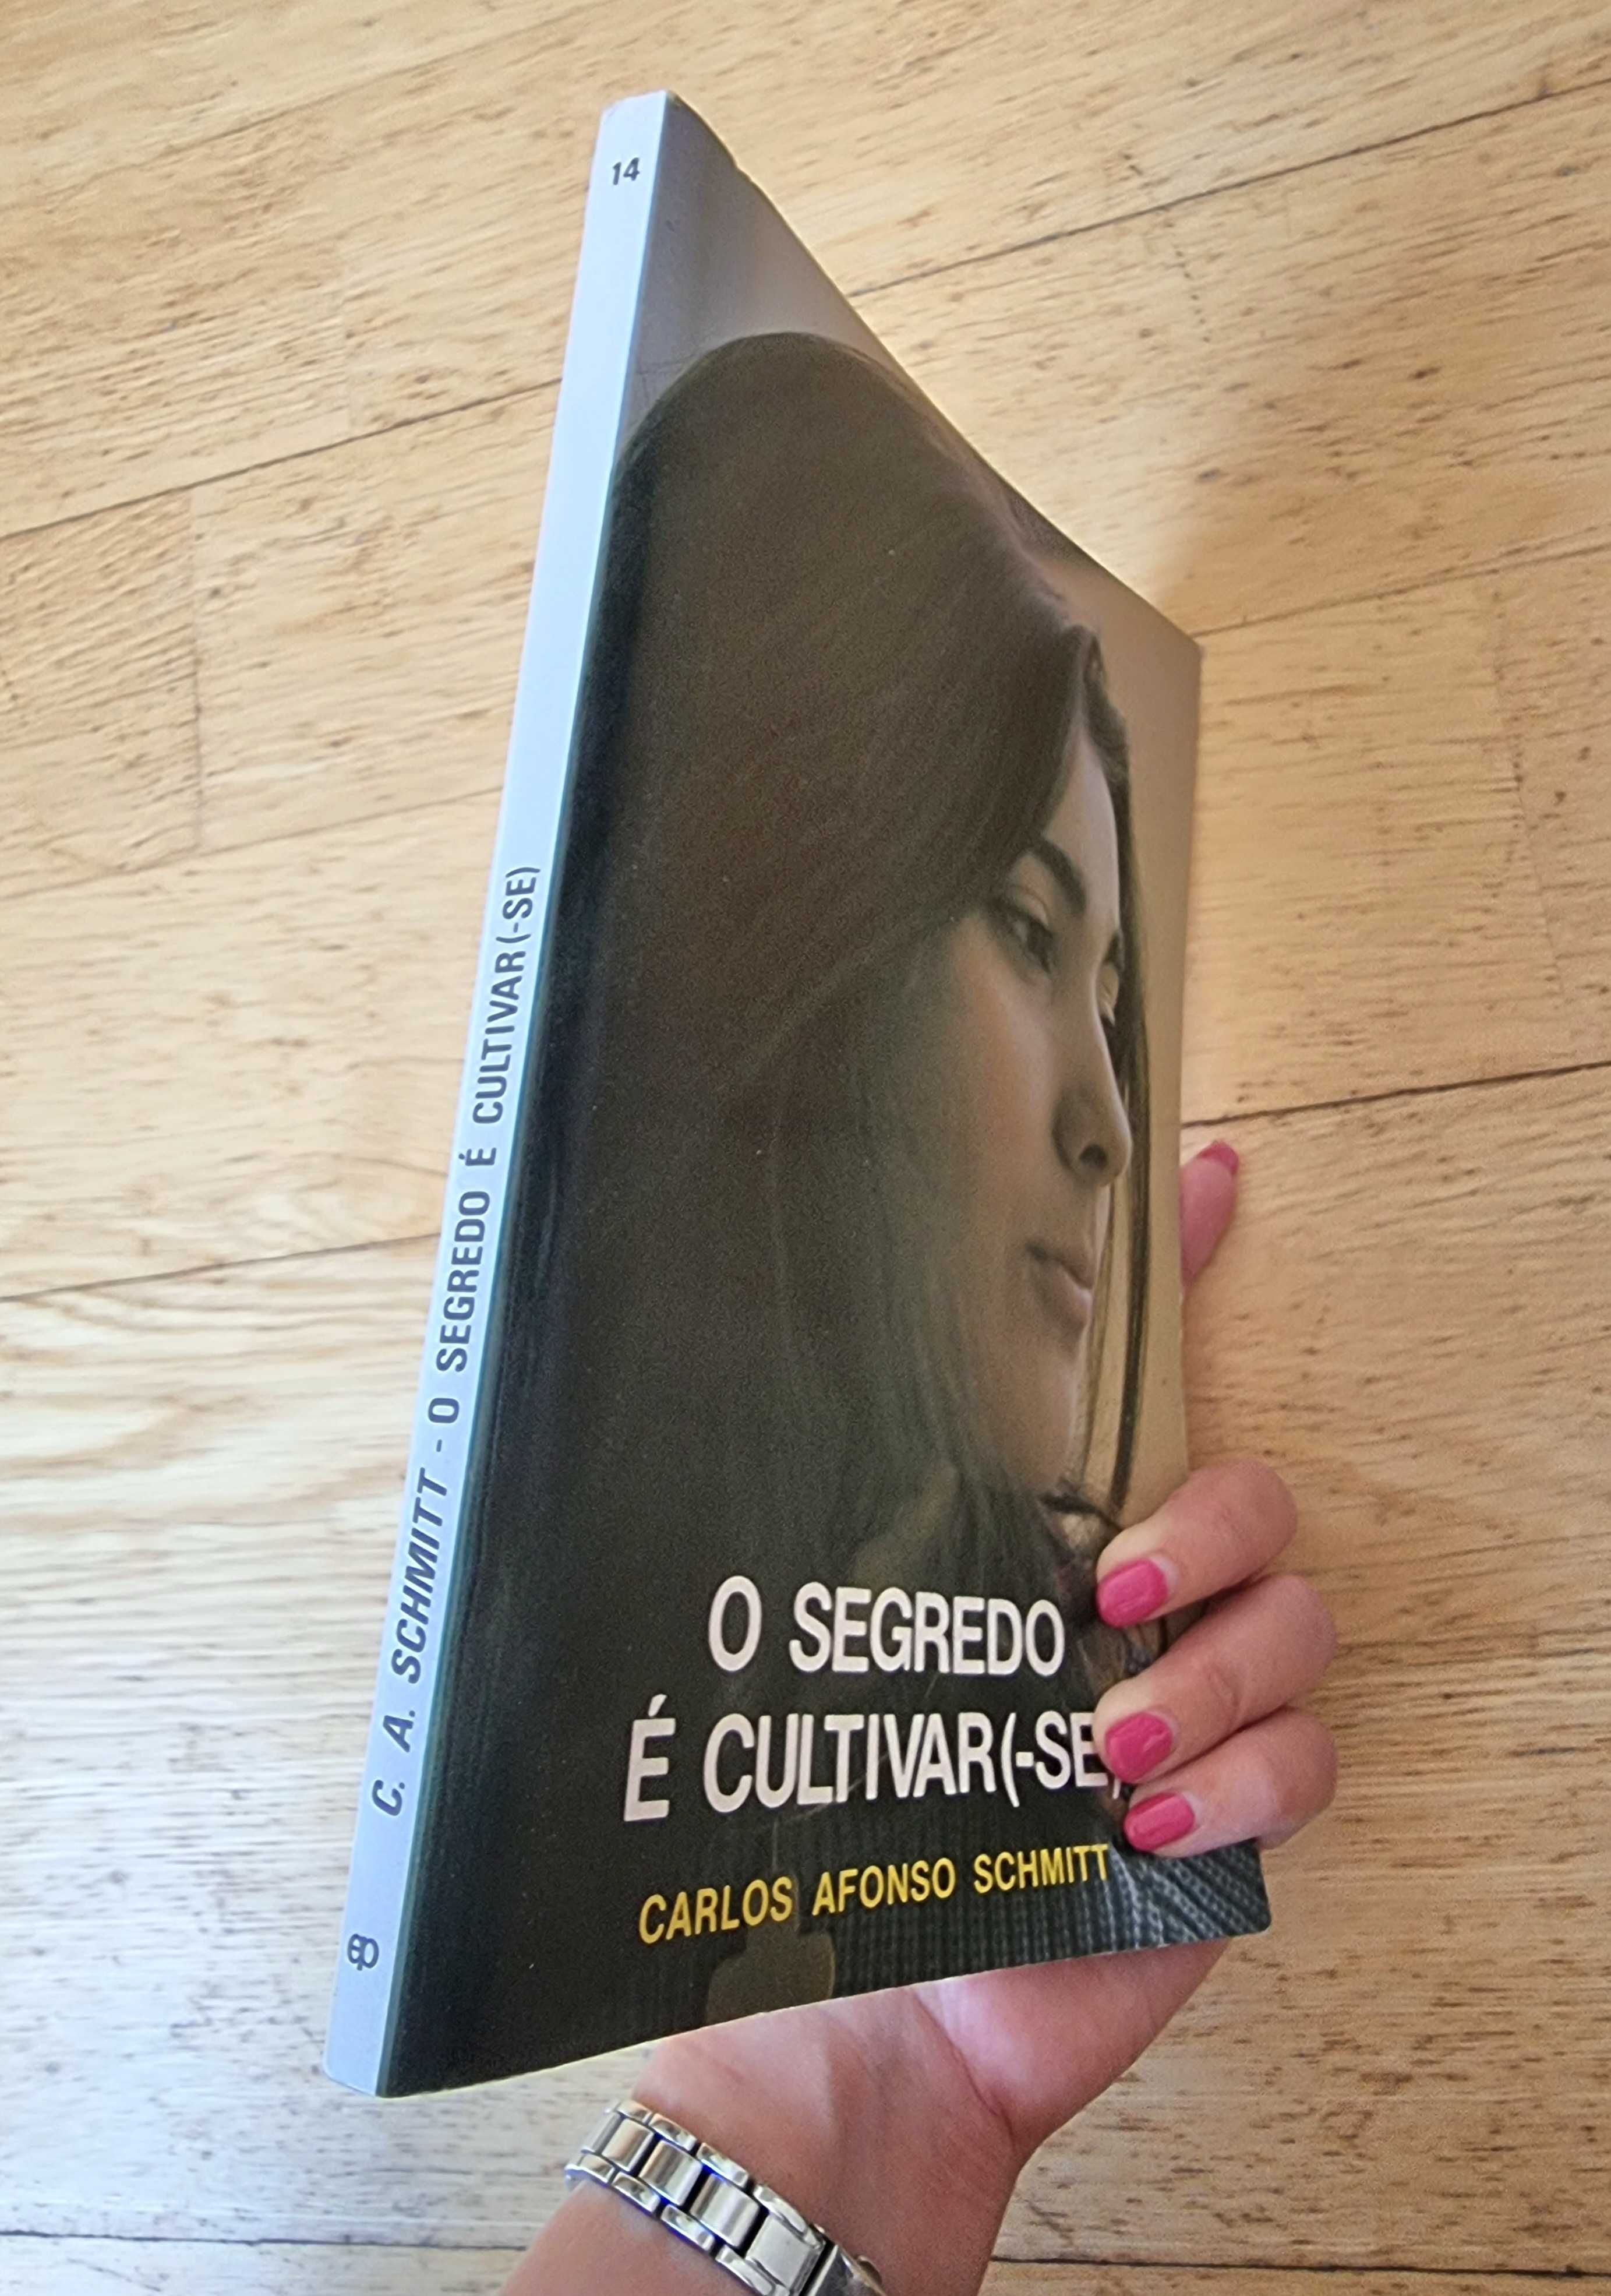 Livro "O Segredo é Cultivar(-se)" de Carlos Afonso Schmitt